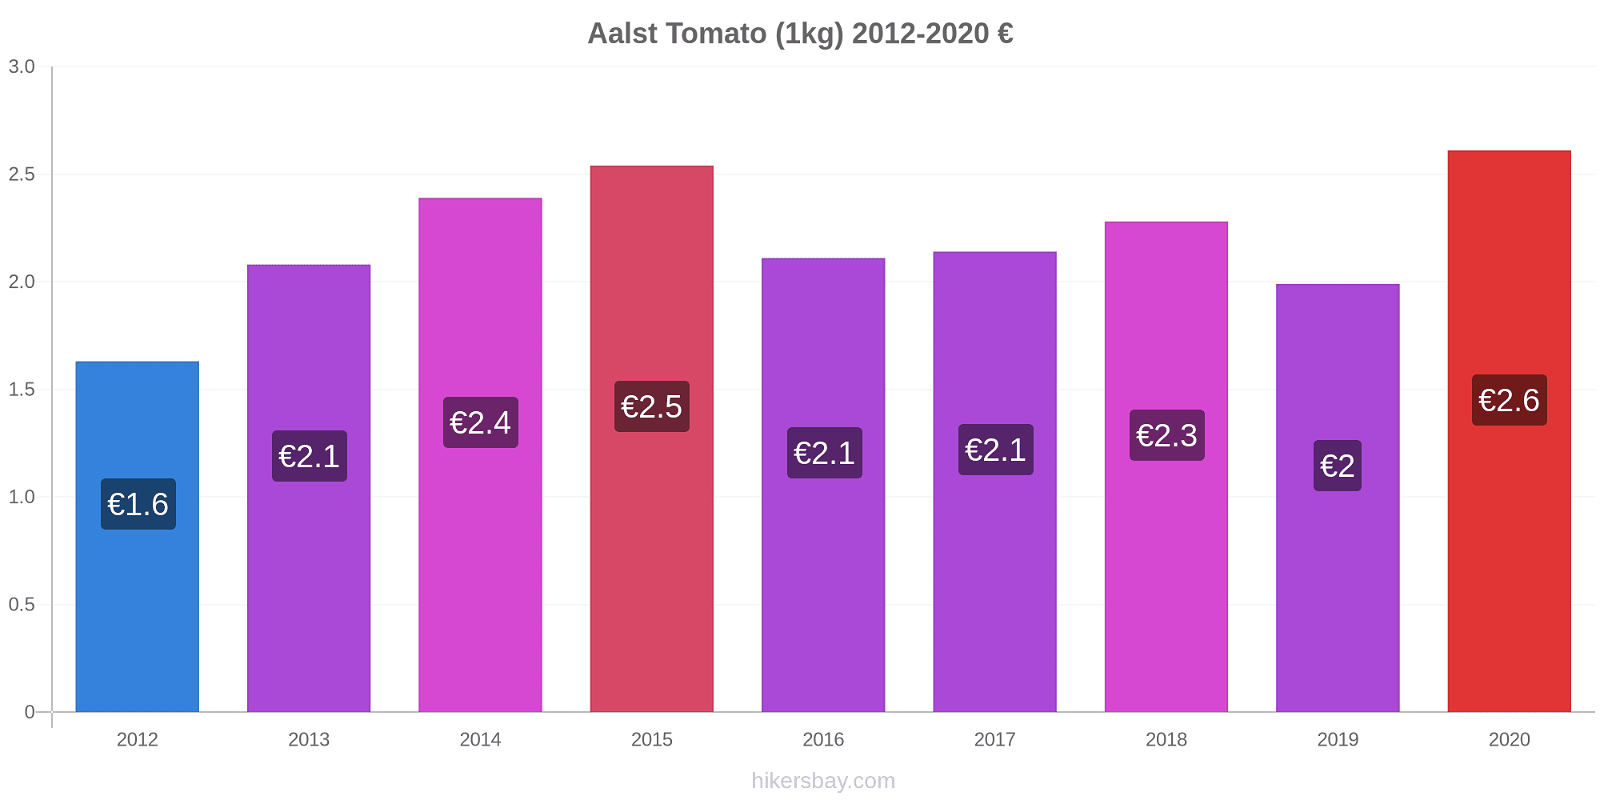 Aalst price changes Tomato (1kg) hikersbay.com